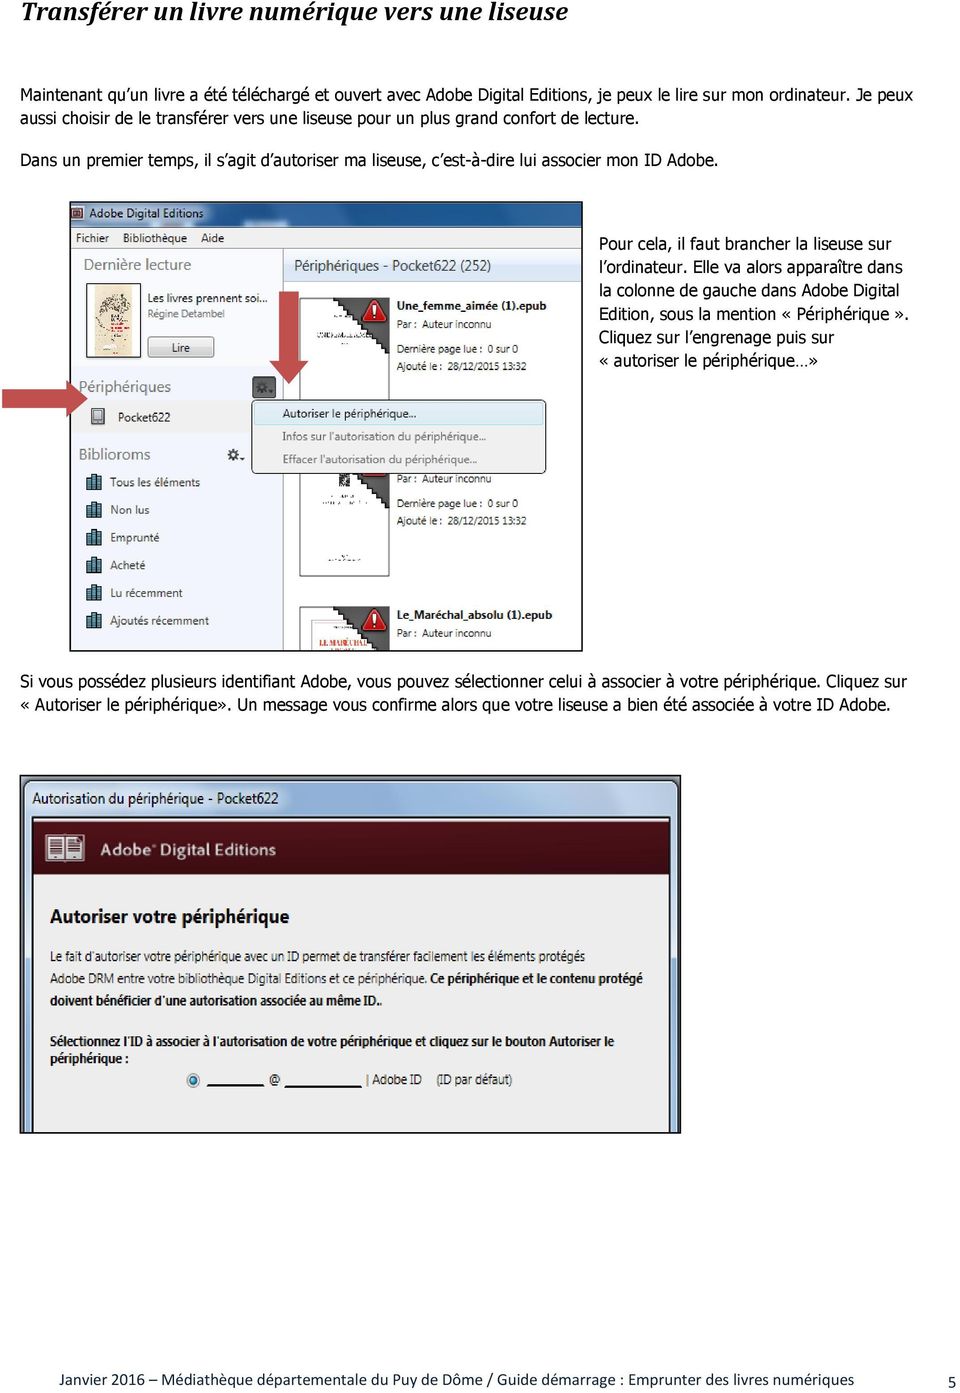 Pour cela, il faut brancher la liseuse sur l ordinateur. Elle va alors apparaître dans la colonne de gauche dans Adobe Digital Edition, sous la mention «Périphérique».